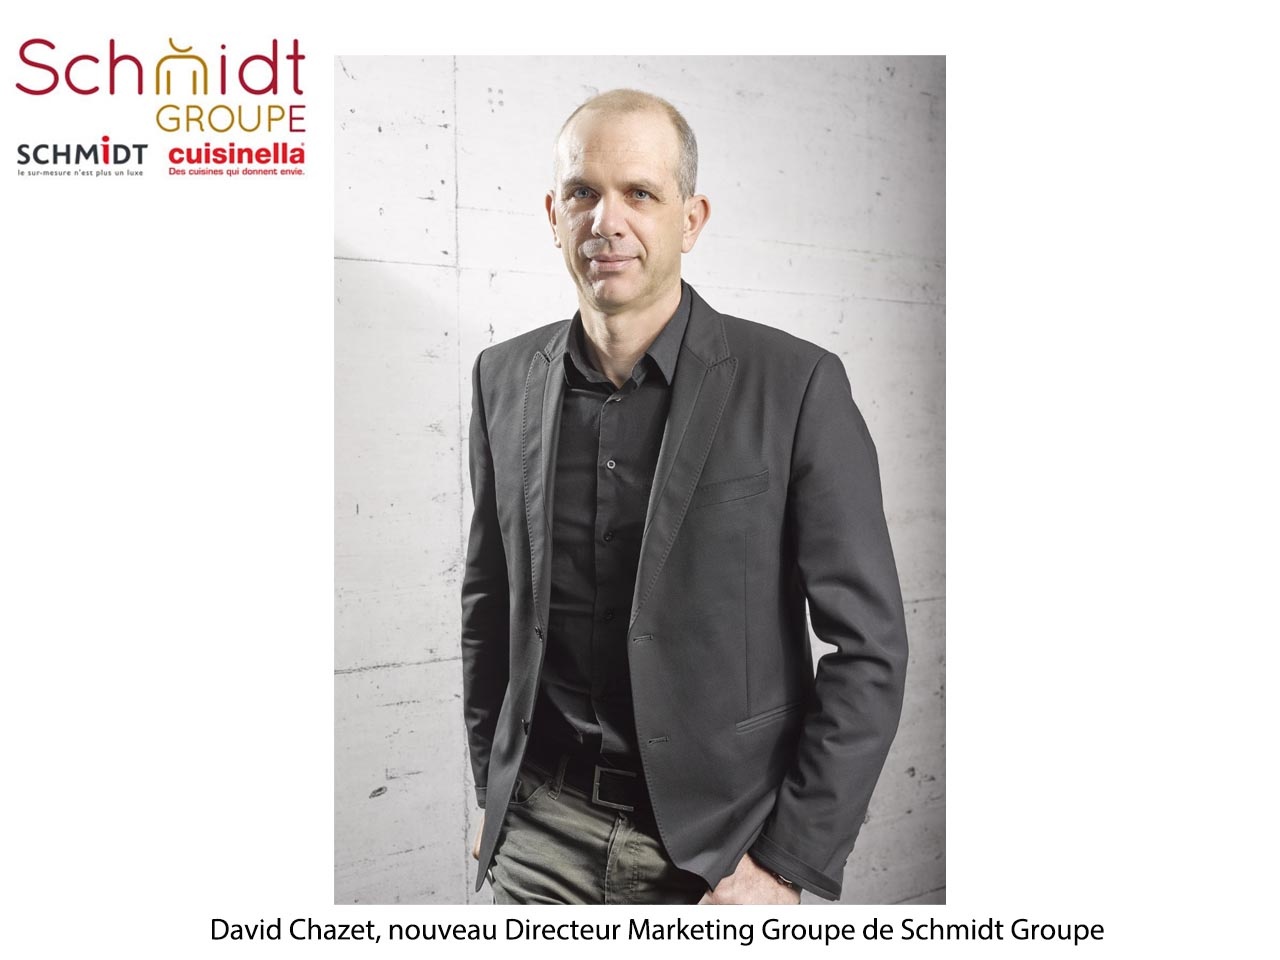 David Chazet nommé Directeur Marketing Groupe au sein de Schmidt Groupe